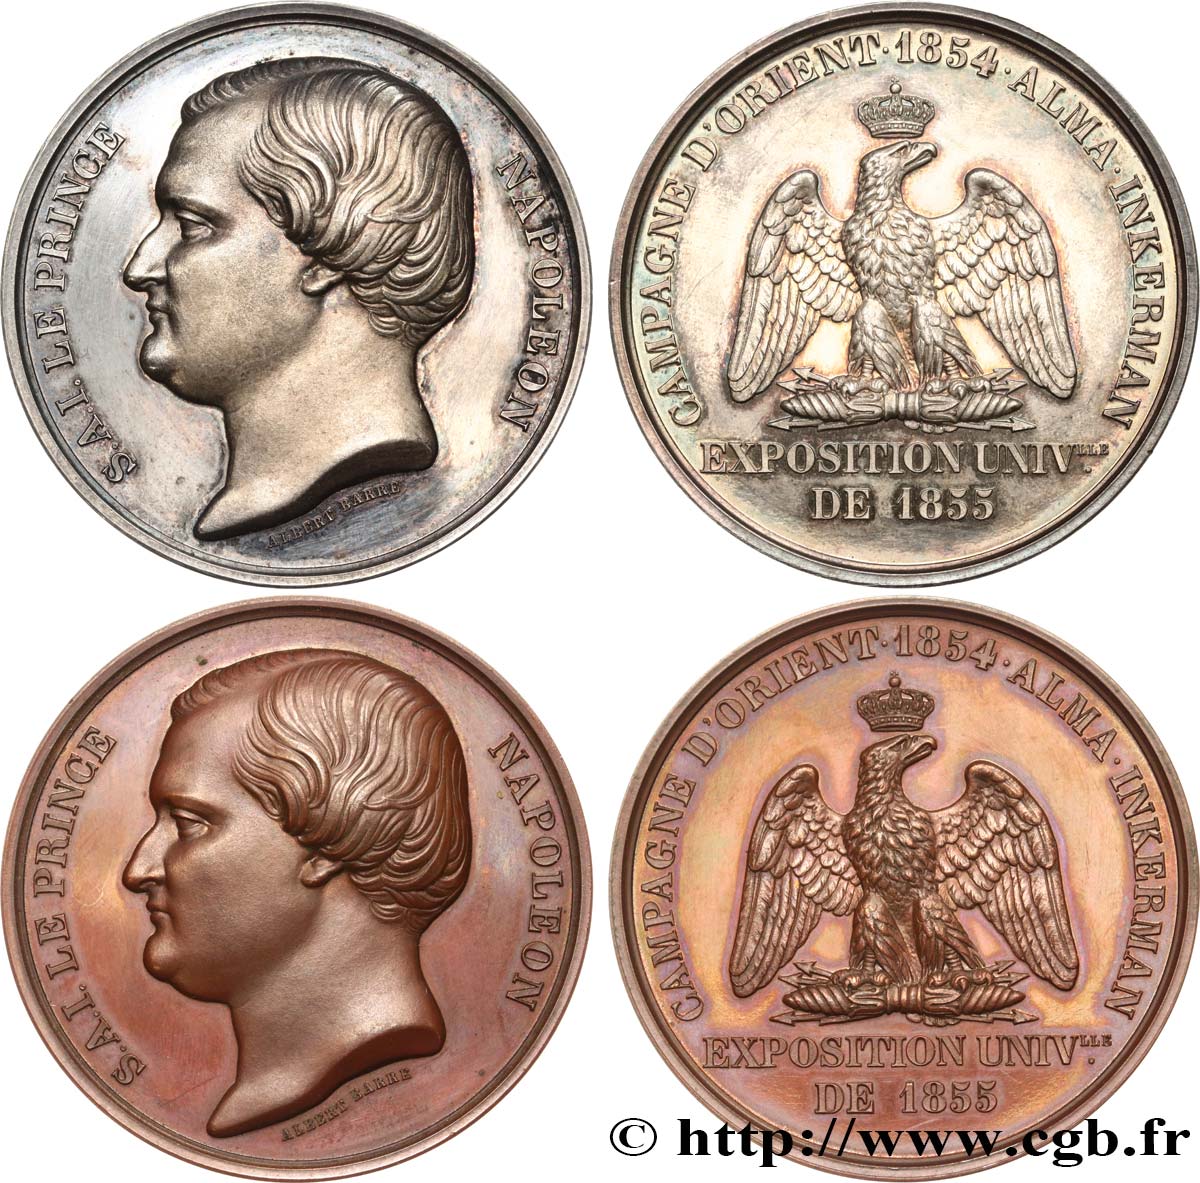 SEGUNDO IMPERIO FRANCES Coffret de deux médailles, Prince Jérôme Napoléon, Exposition Universelle EBC